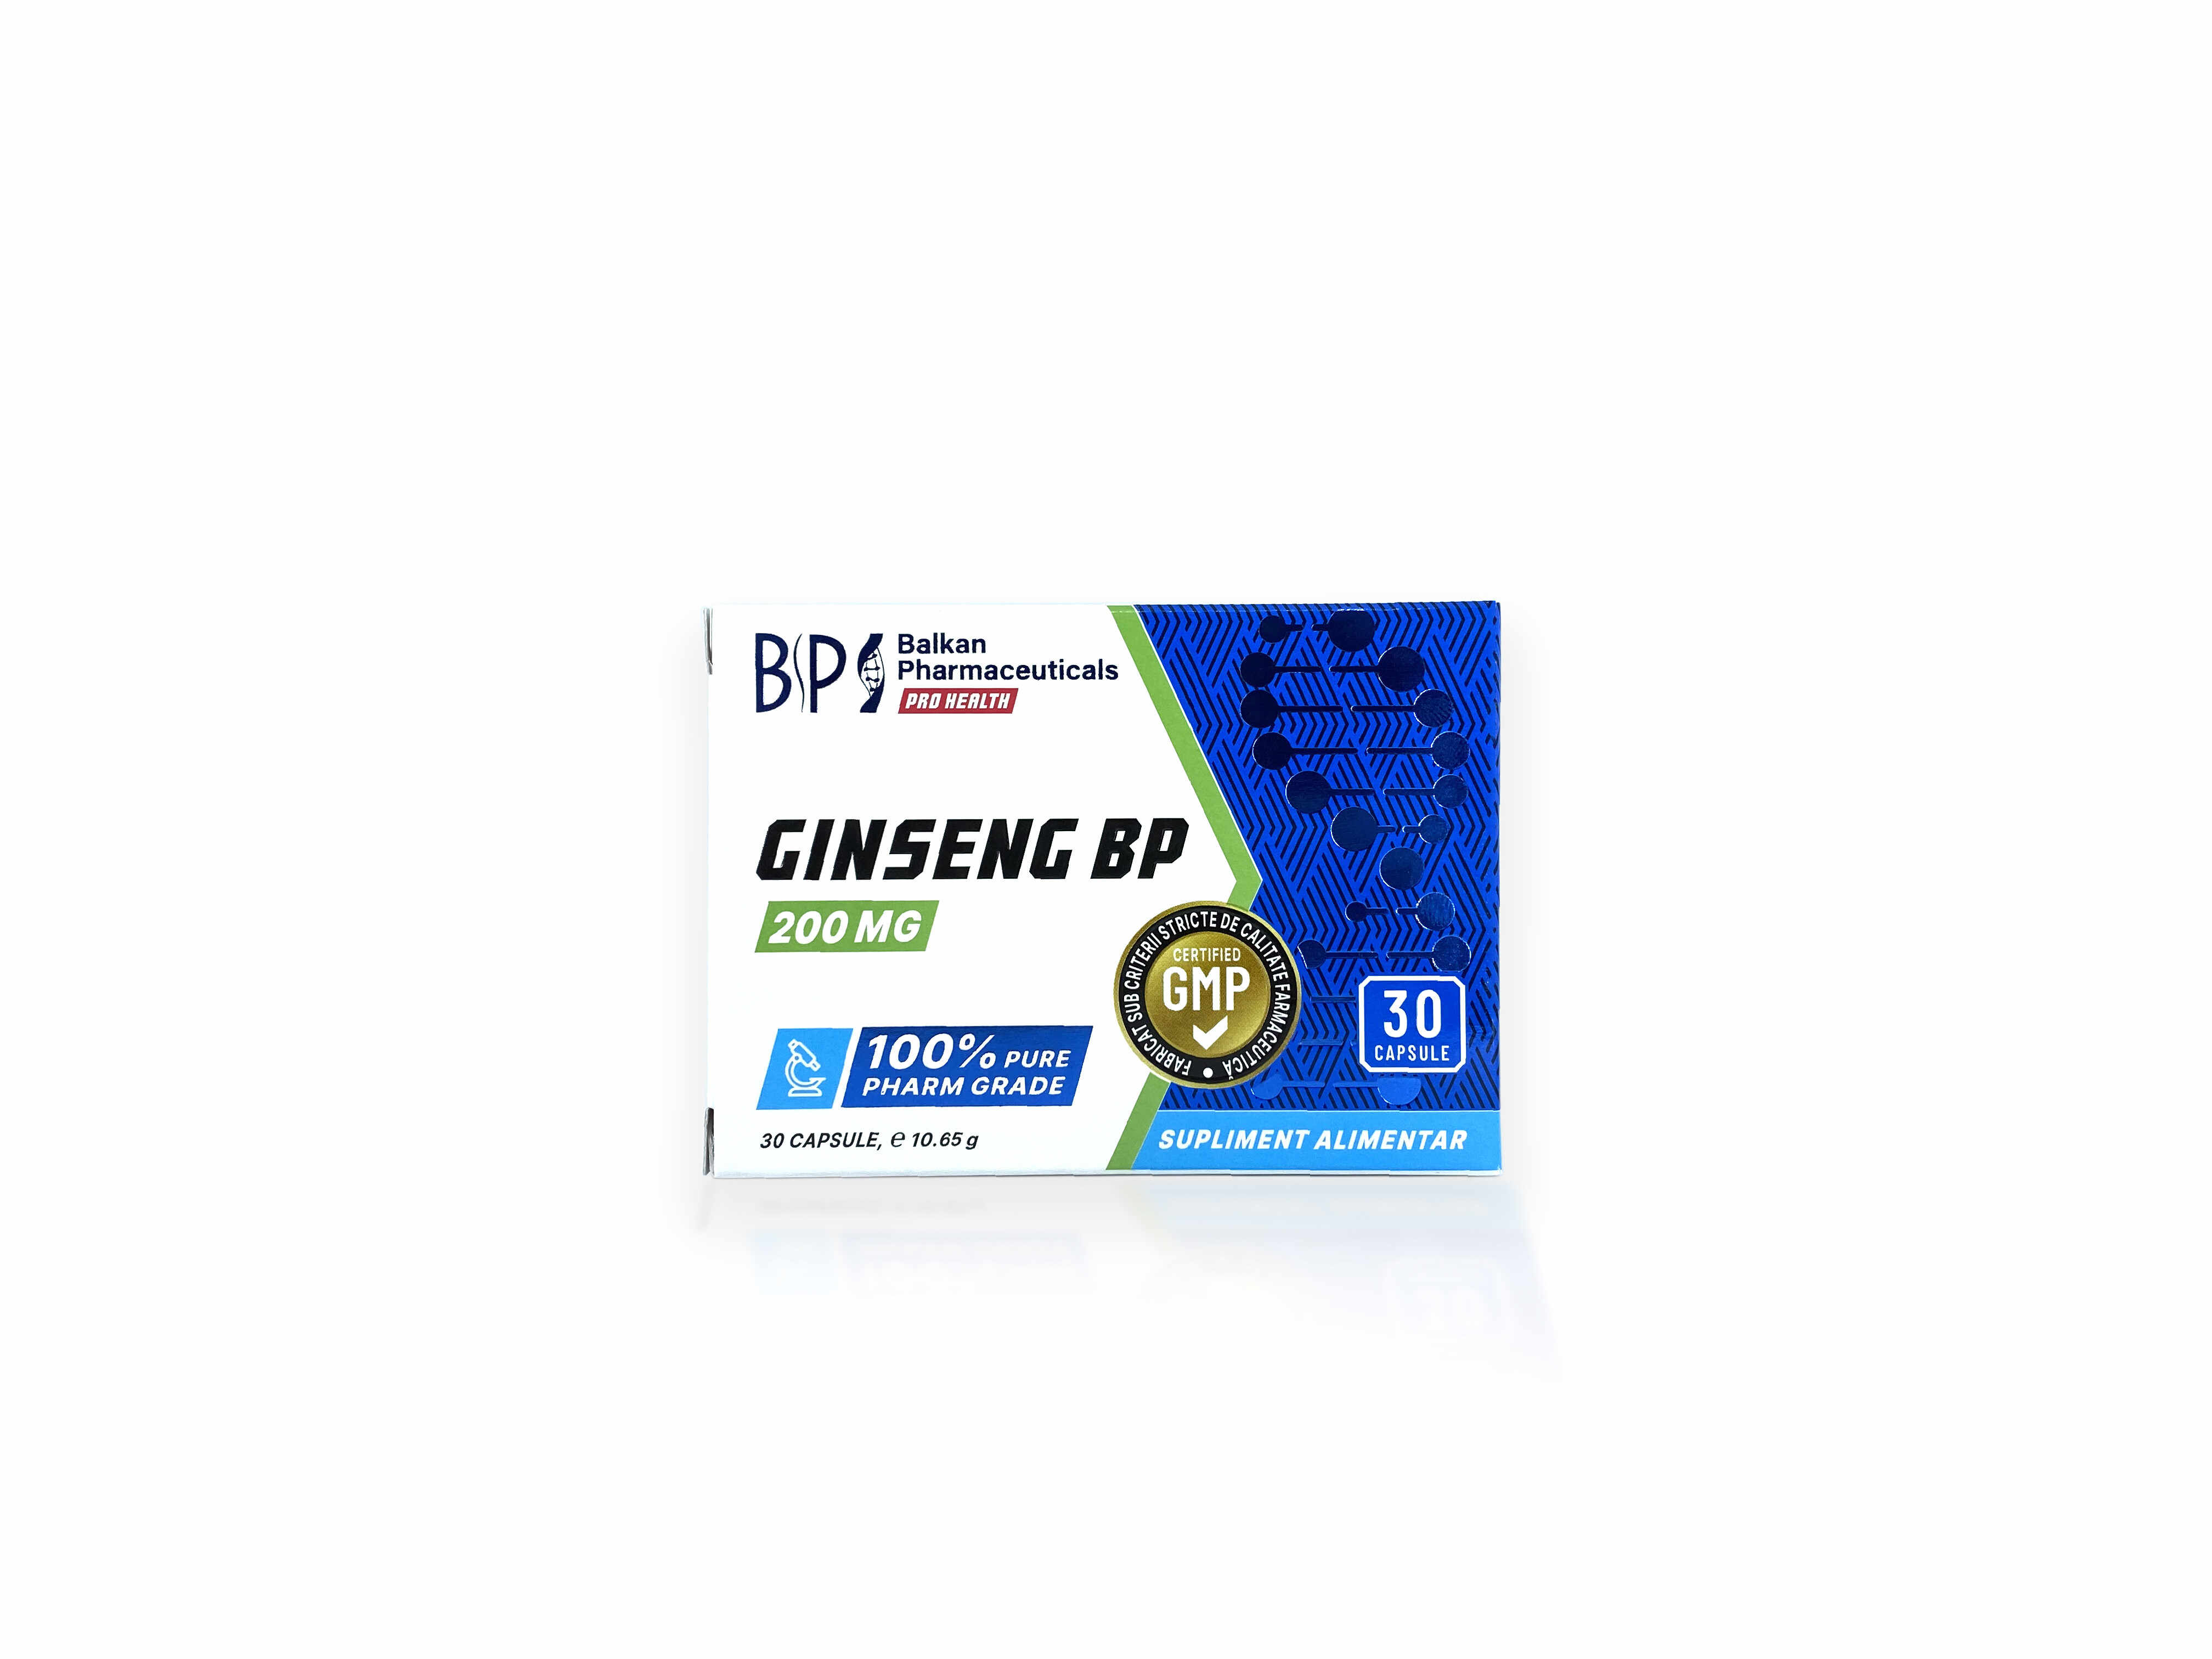 Ginseng BP 200 mg 30 capsule Balkan Pharmaceuticals